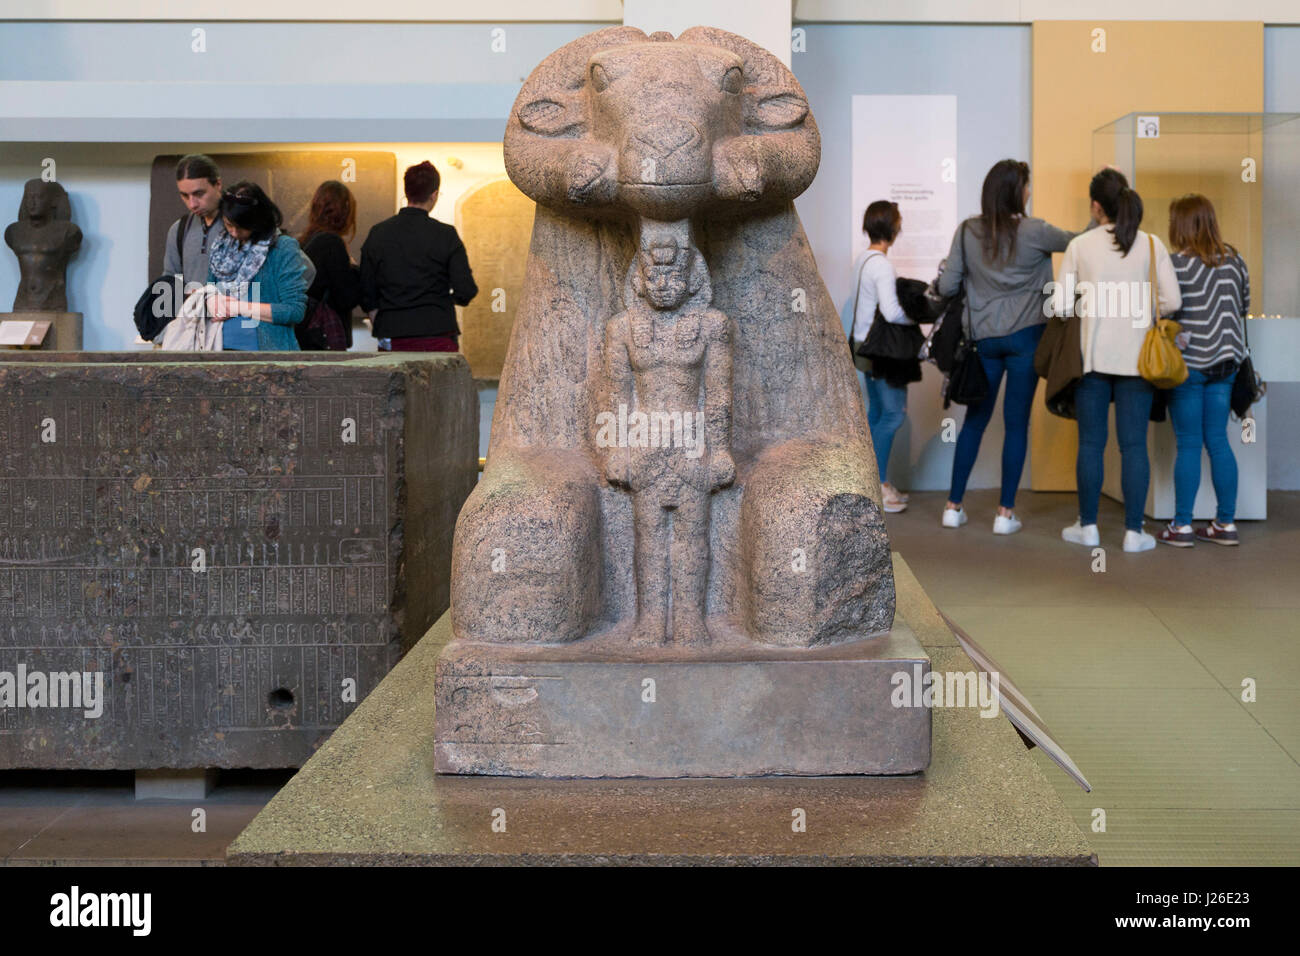 Sculpture égyptien de l'intérieur au British Museum, Londres, Angleterre, Royaume-Uni, Europe Banque D'Images